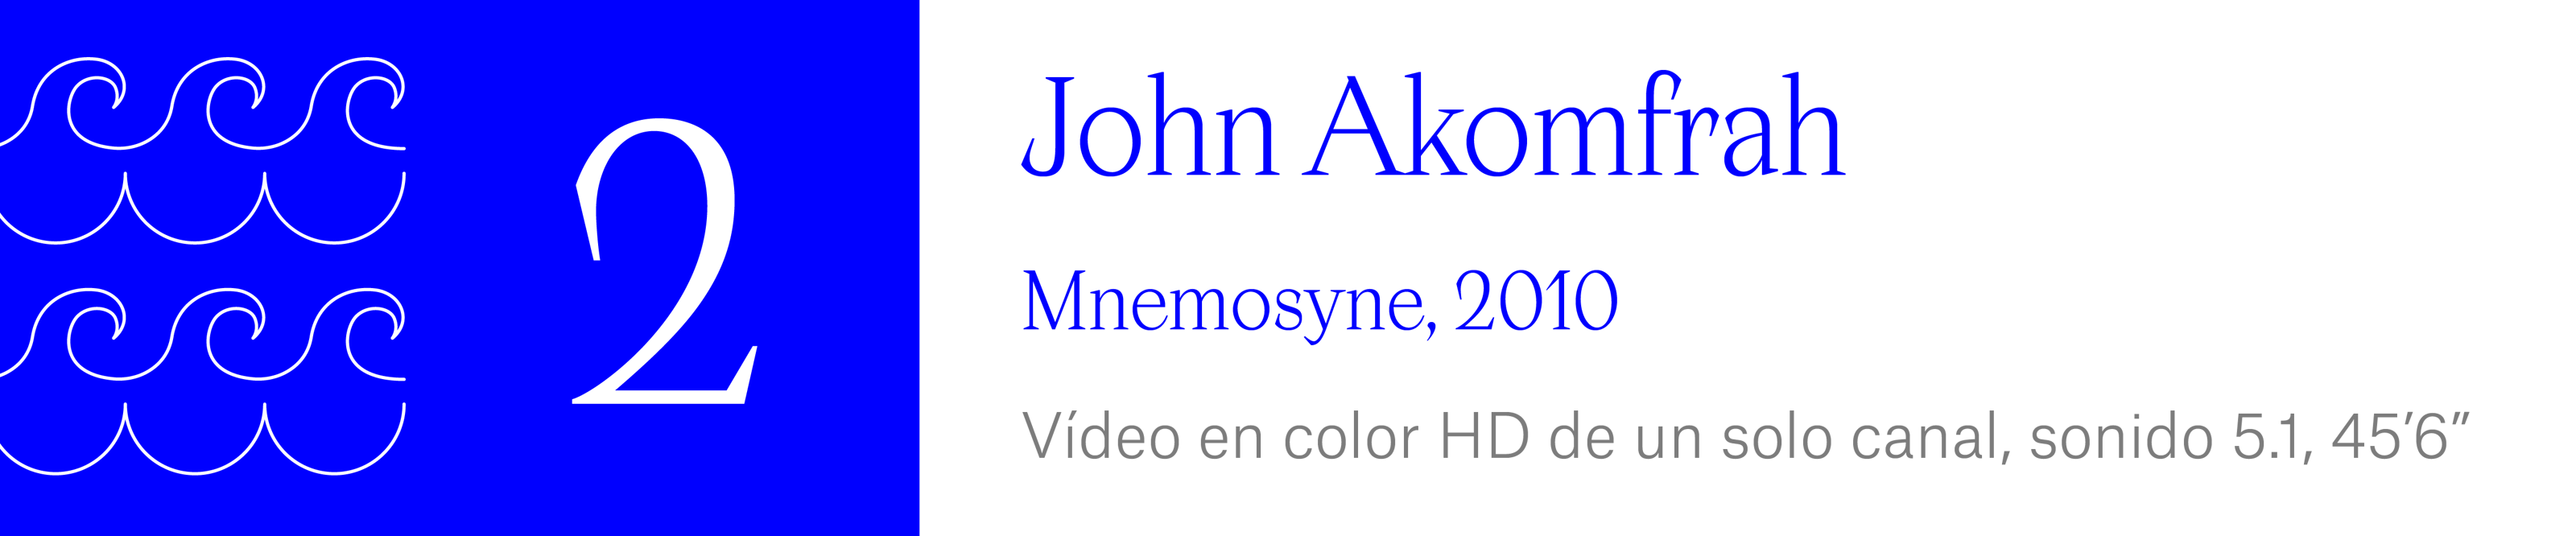 (2) John Akomfrah - Mnemosyne, 2010 Vídeo en color HD de un solo canal, sonido 5.1, 45’6”